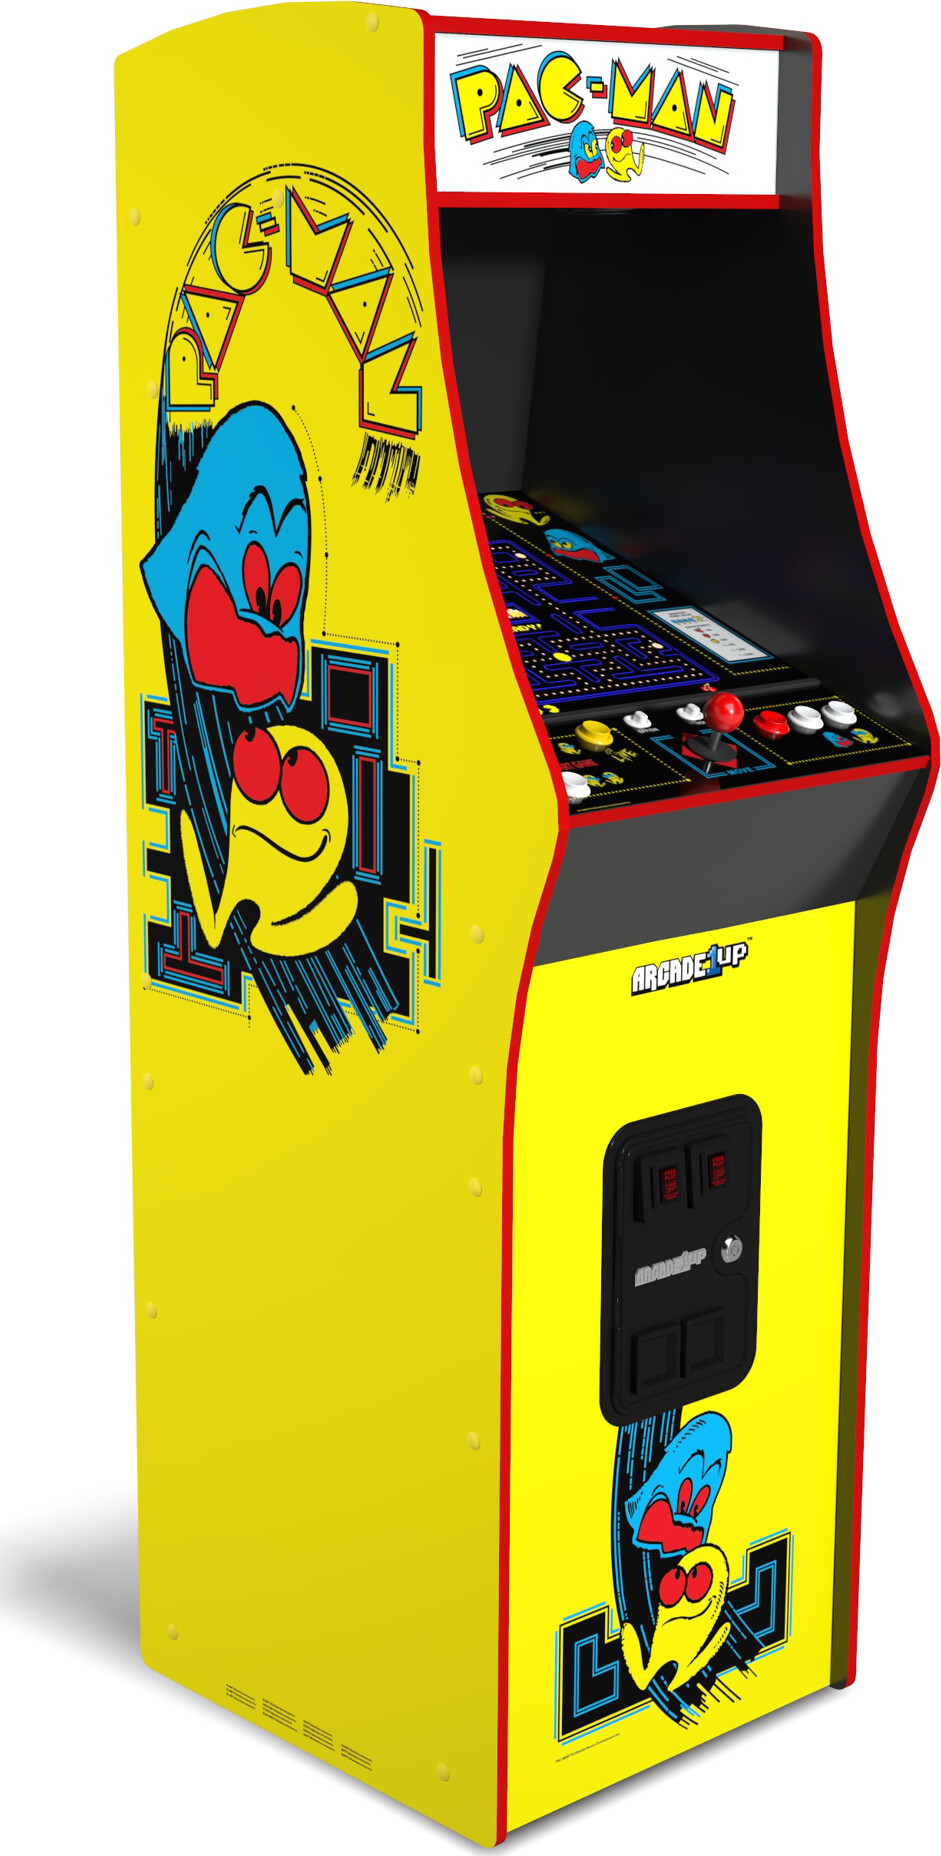 Billede af Arcade 1 Up - Pac-man Deluxe Arcade Machine